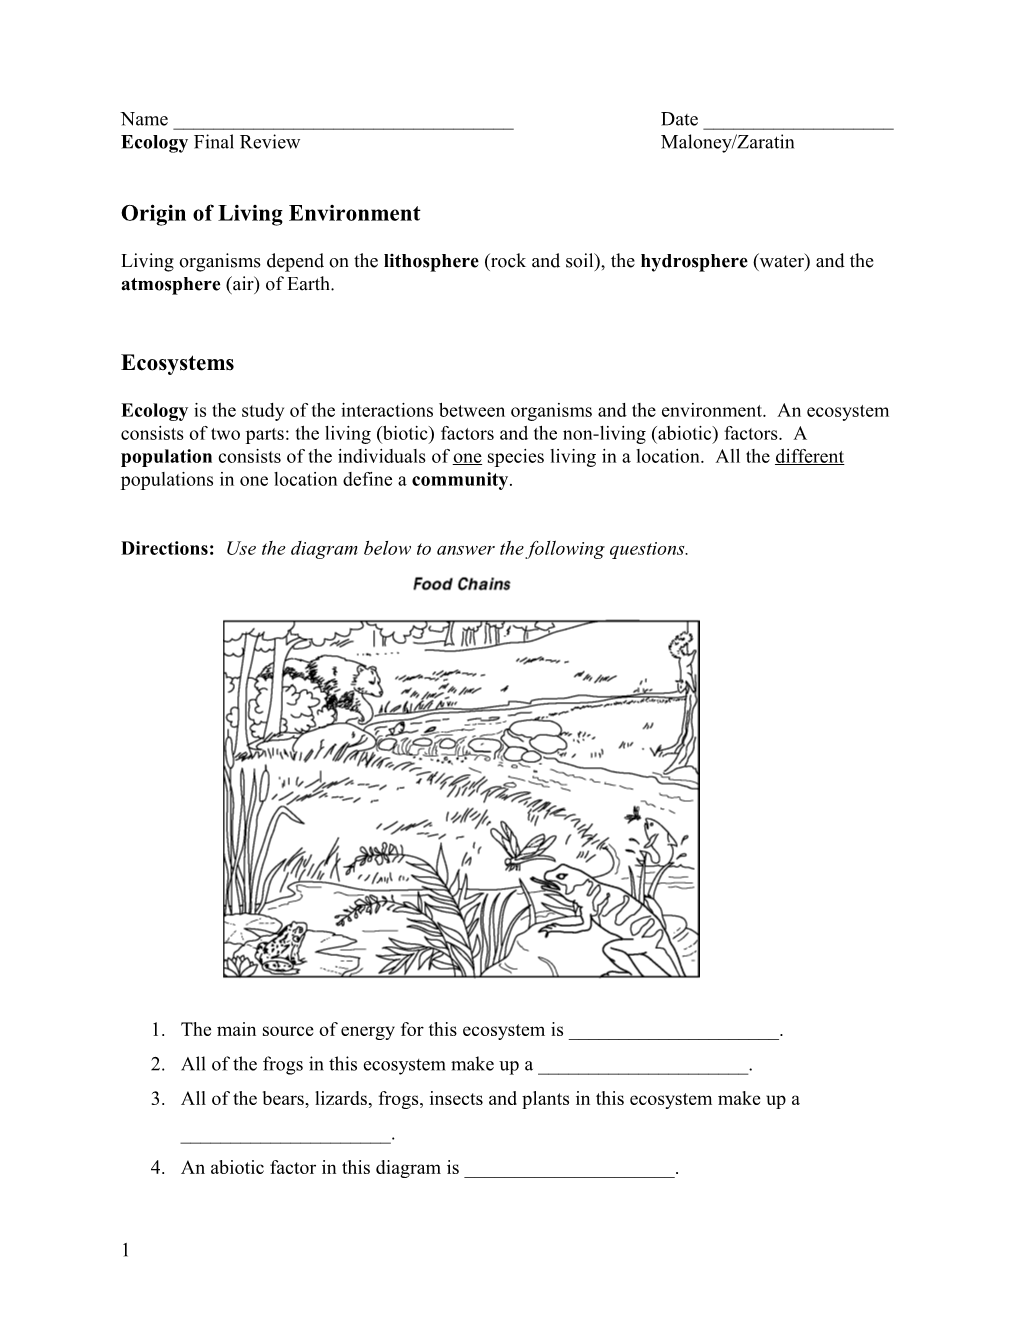 Ecology Final Review Maloney/Zaratin